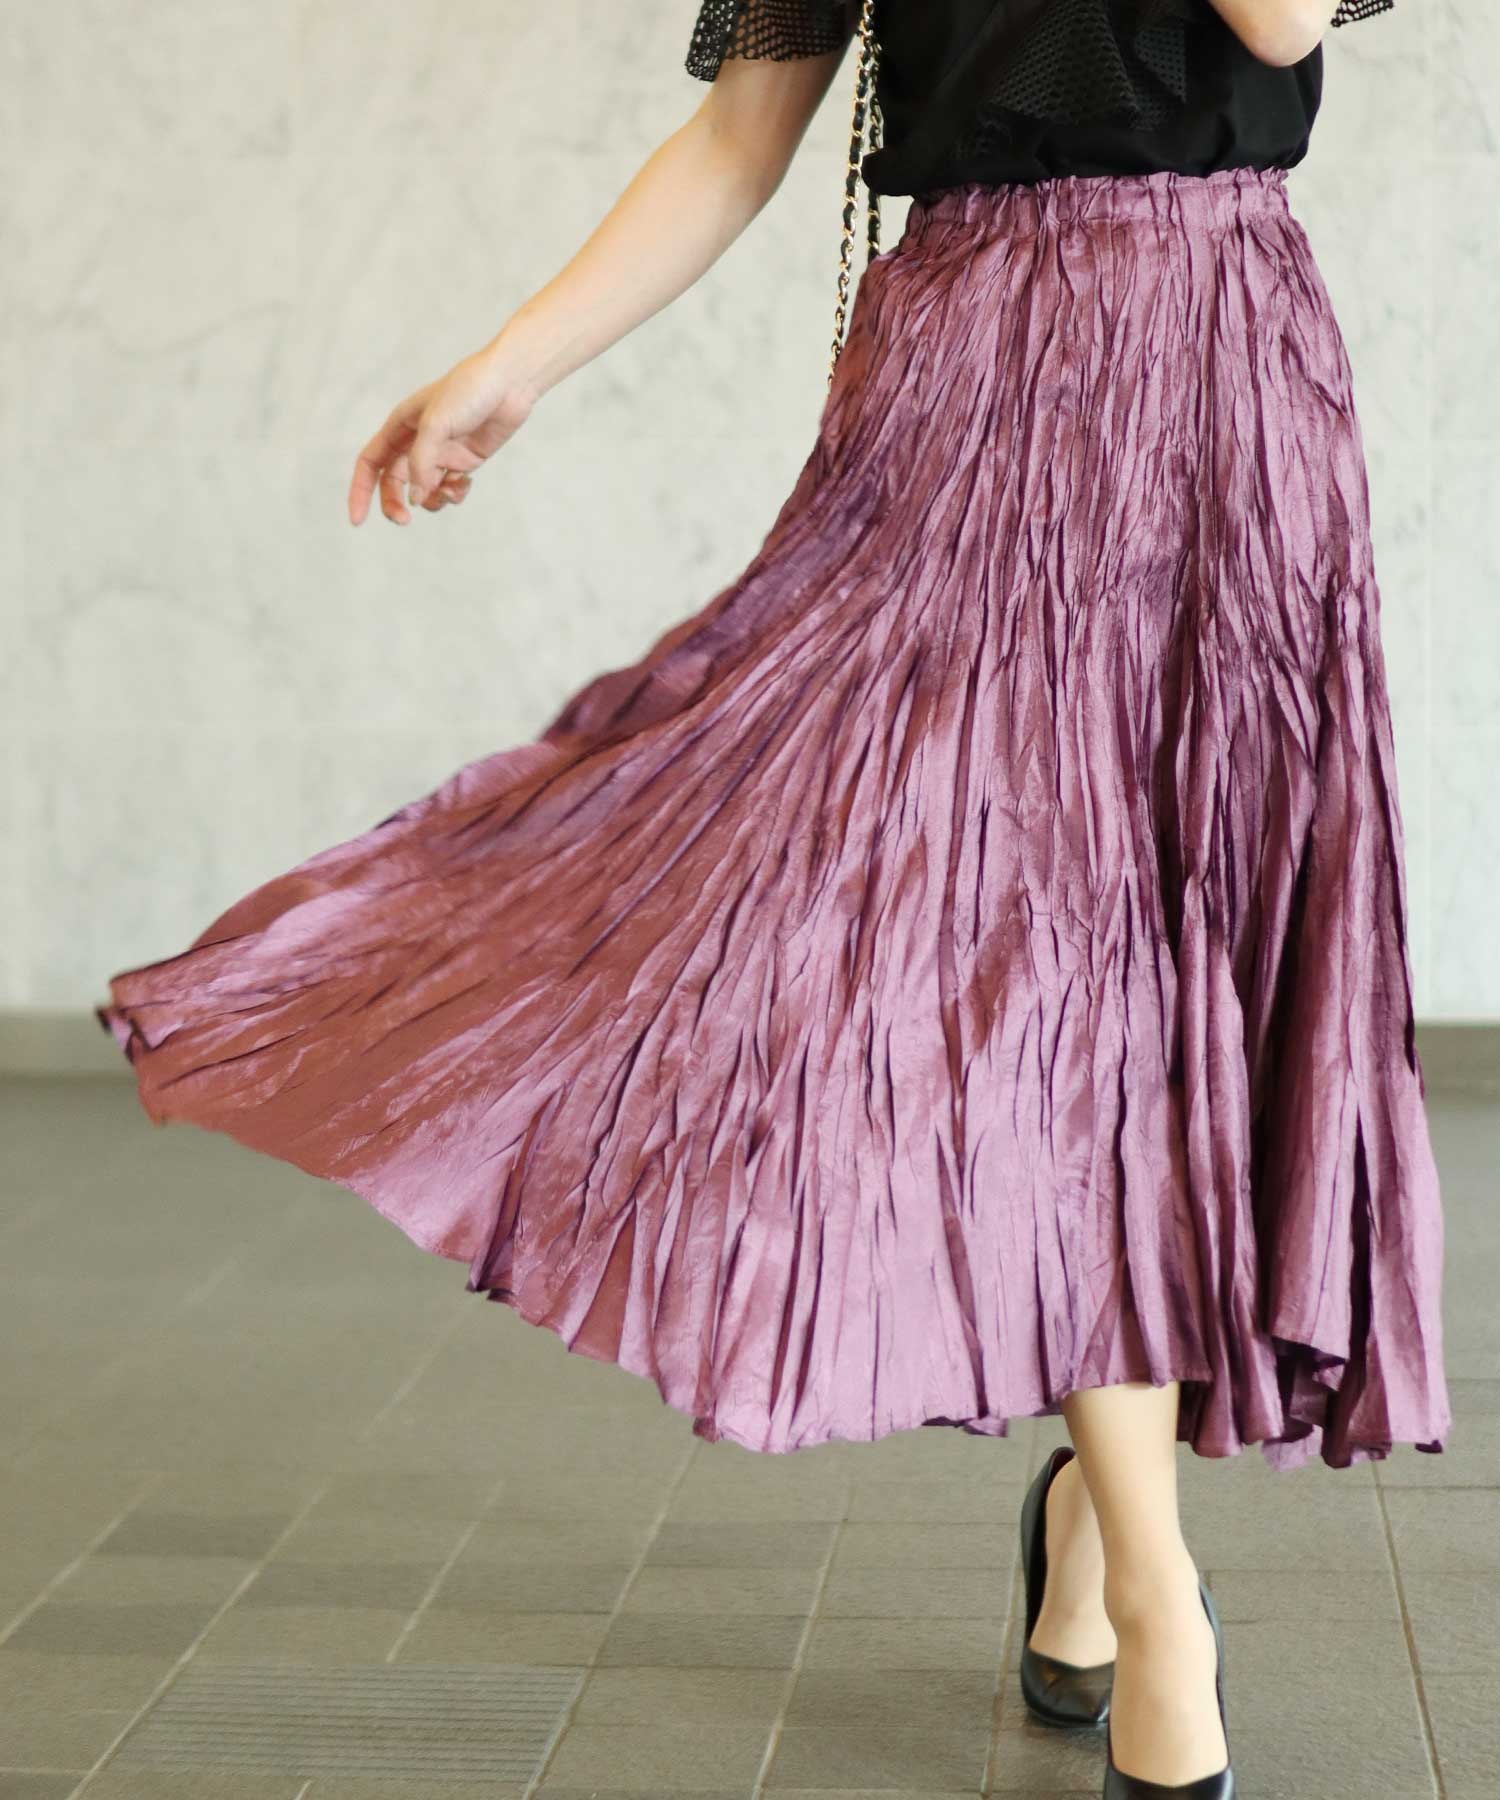 Sawa 国内送料無料 【ポイント10倍】 a la mode美しい艶めきのロングフレアスカート